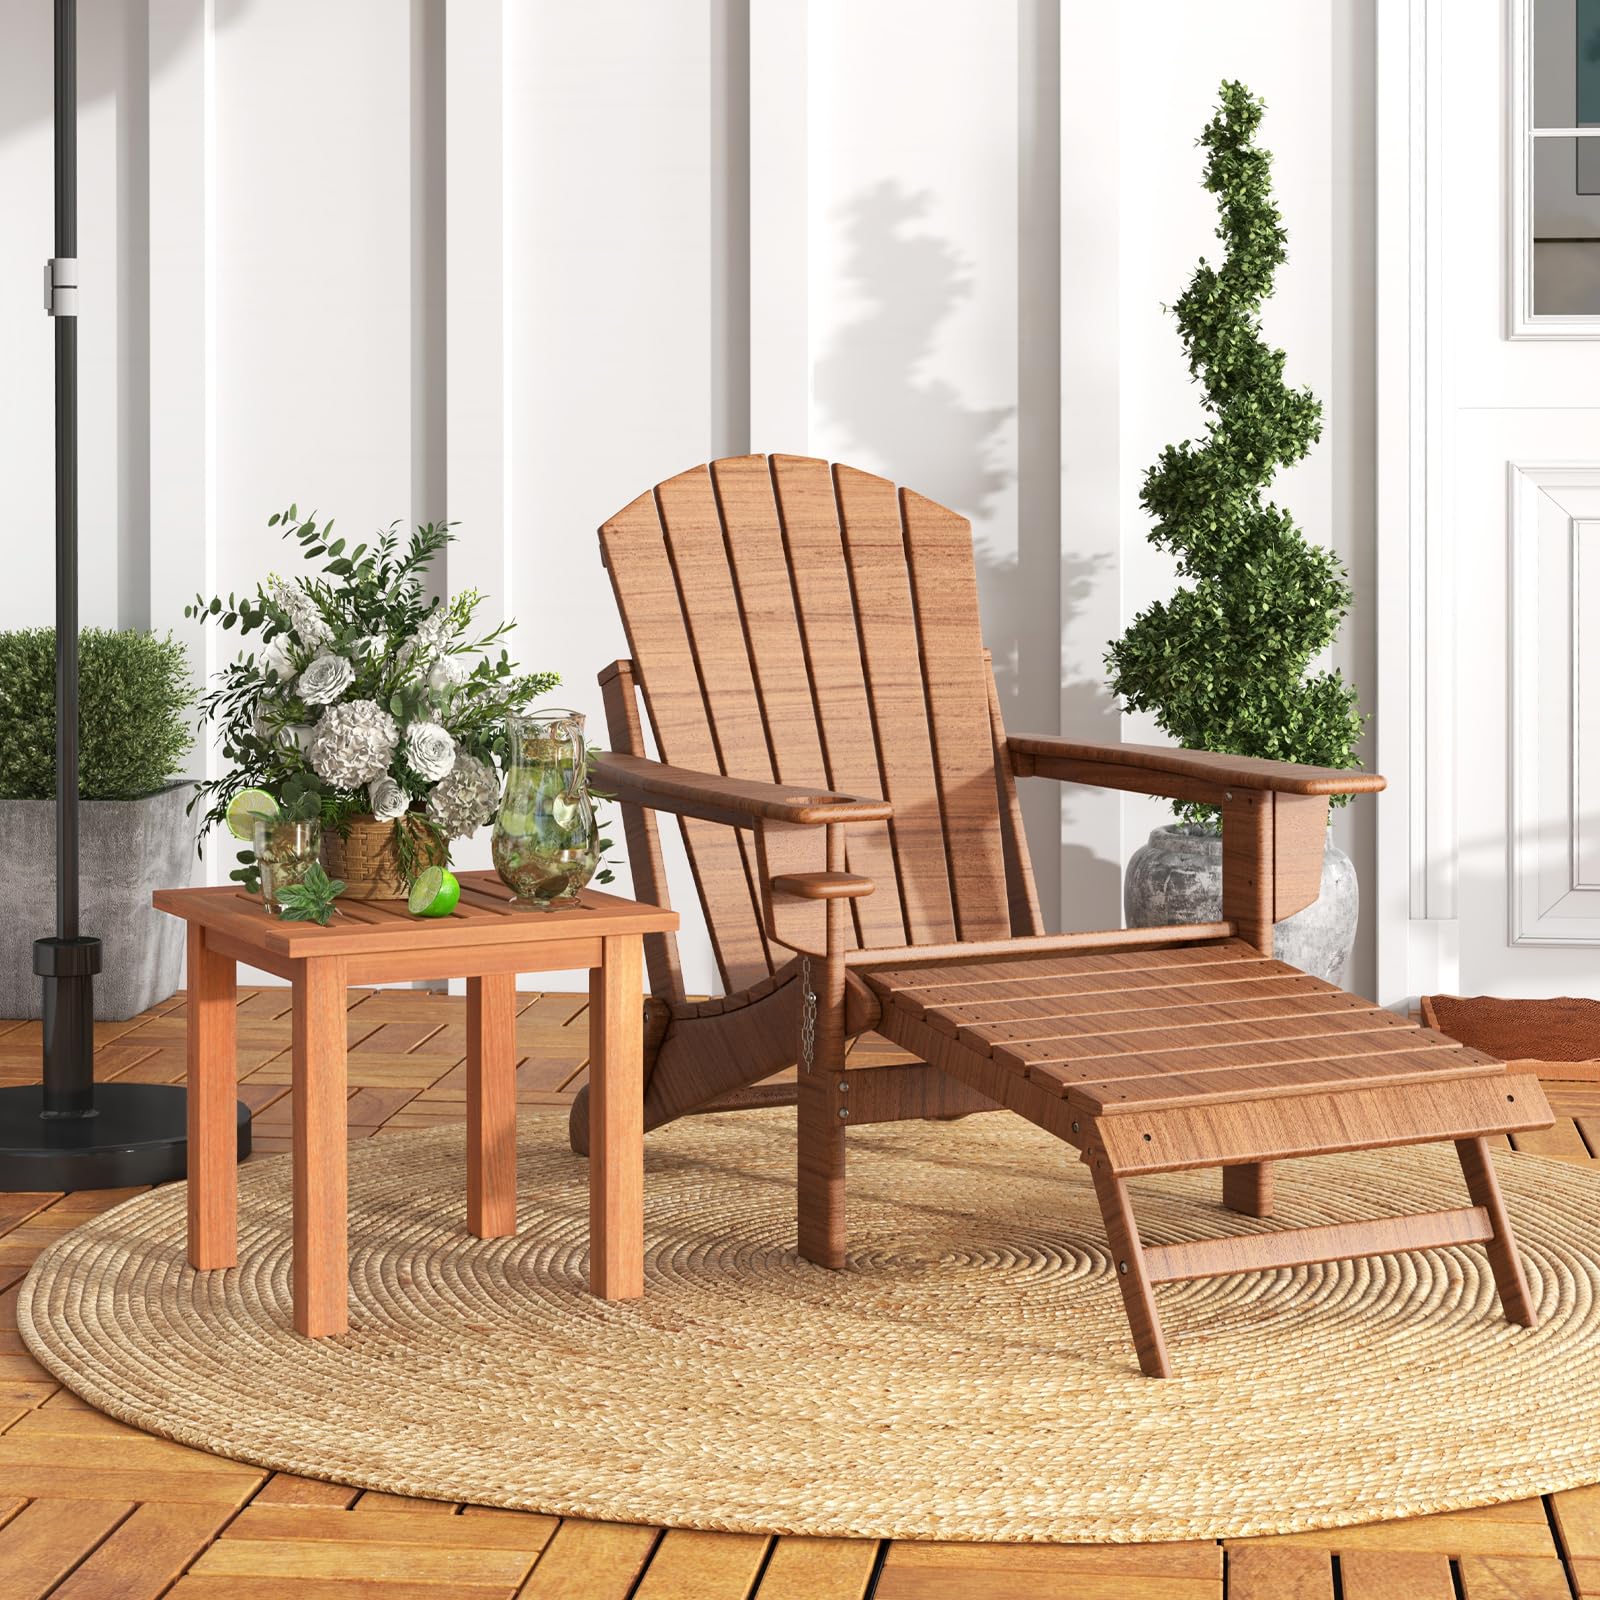 Giantex Hardwood Outdoor Side Table